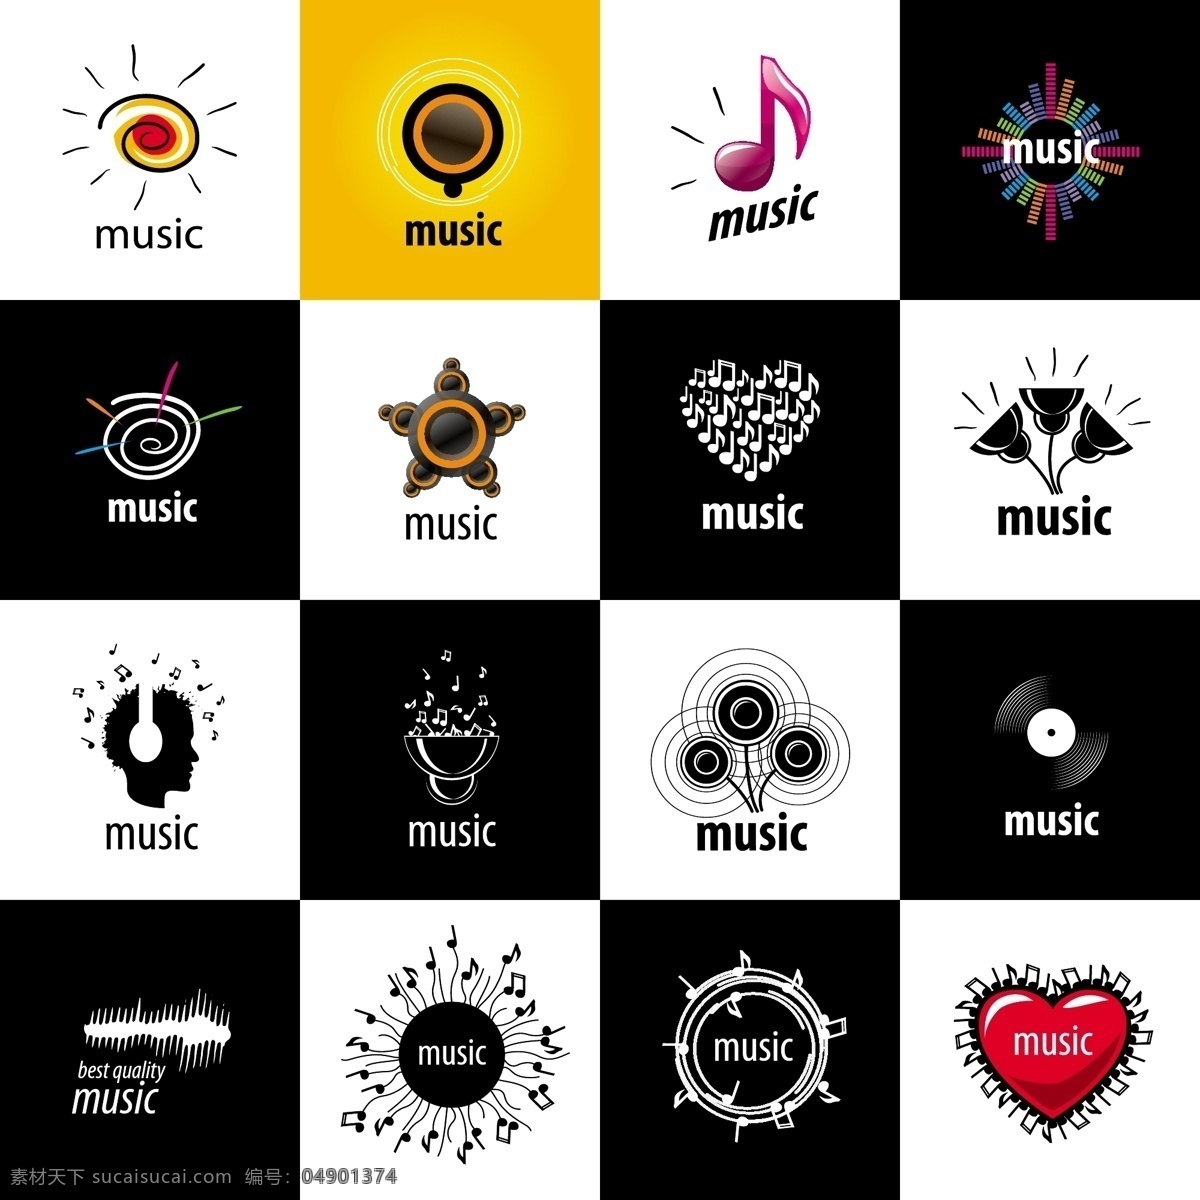 时尚 图标 音乐 元素 个性 创意 标志 标志图形 logo 设计创意 图形 标志设计 商标设计 企业 公司 行业 黑色